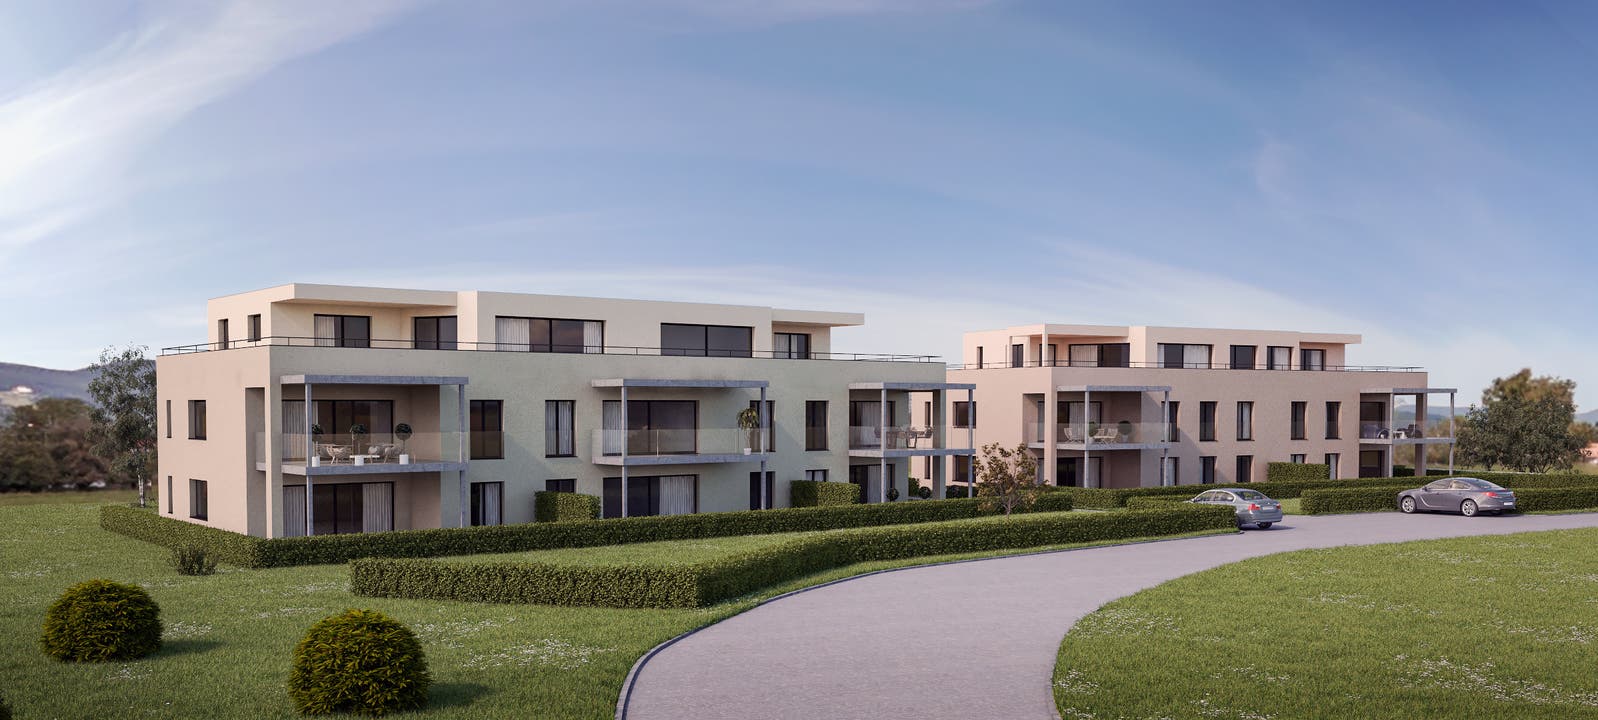 Überbauung Hardstrasse «Lebensräume für Lebensträume» lautet der Slogan der Bau- und Projektleitung Herger Immobilientreuhand AG mit Sitz in Binningen BL.